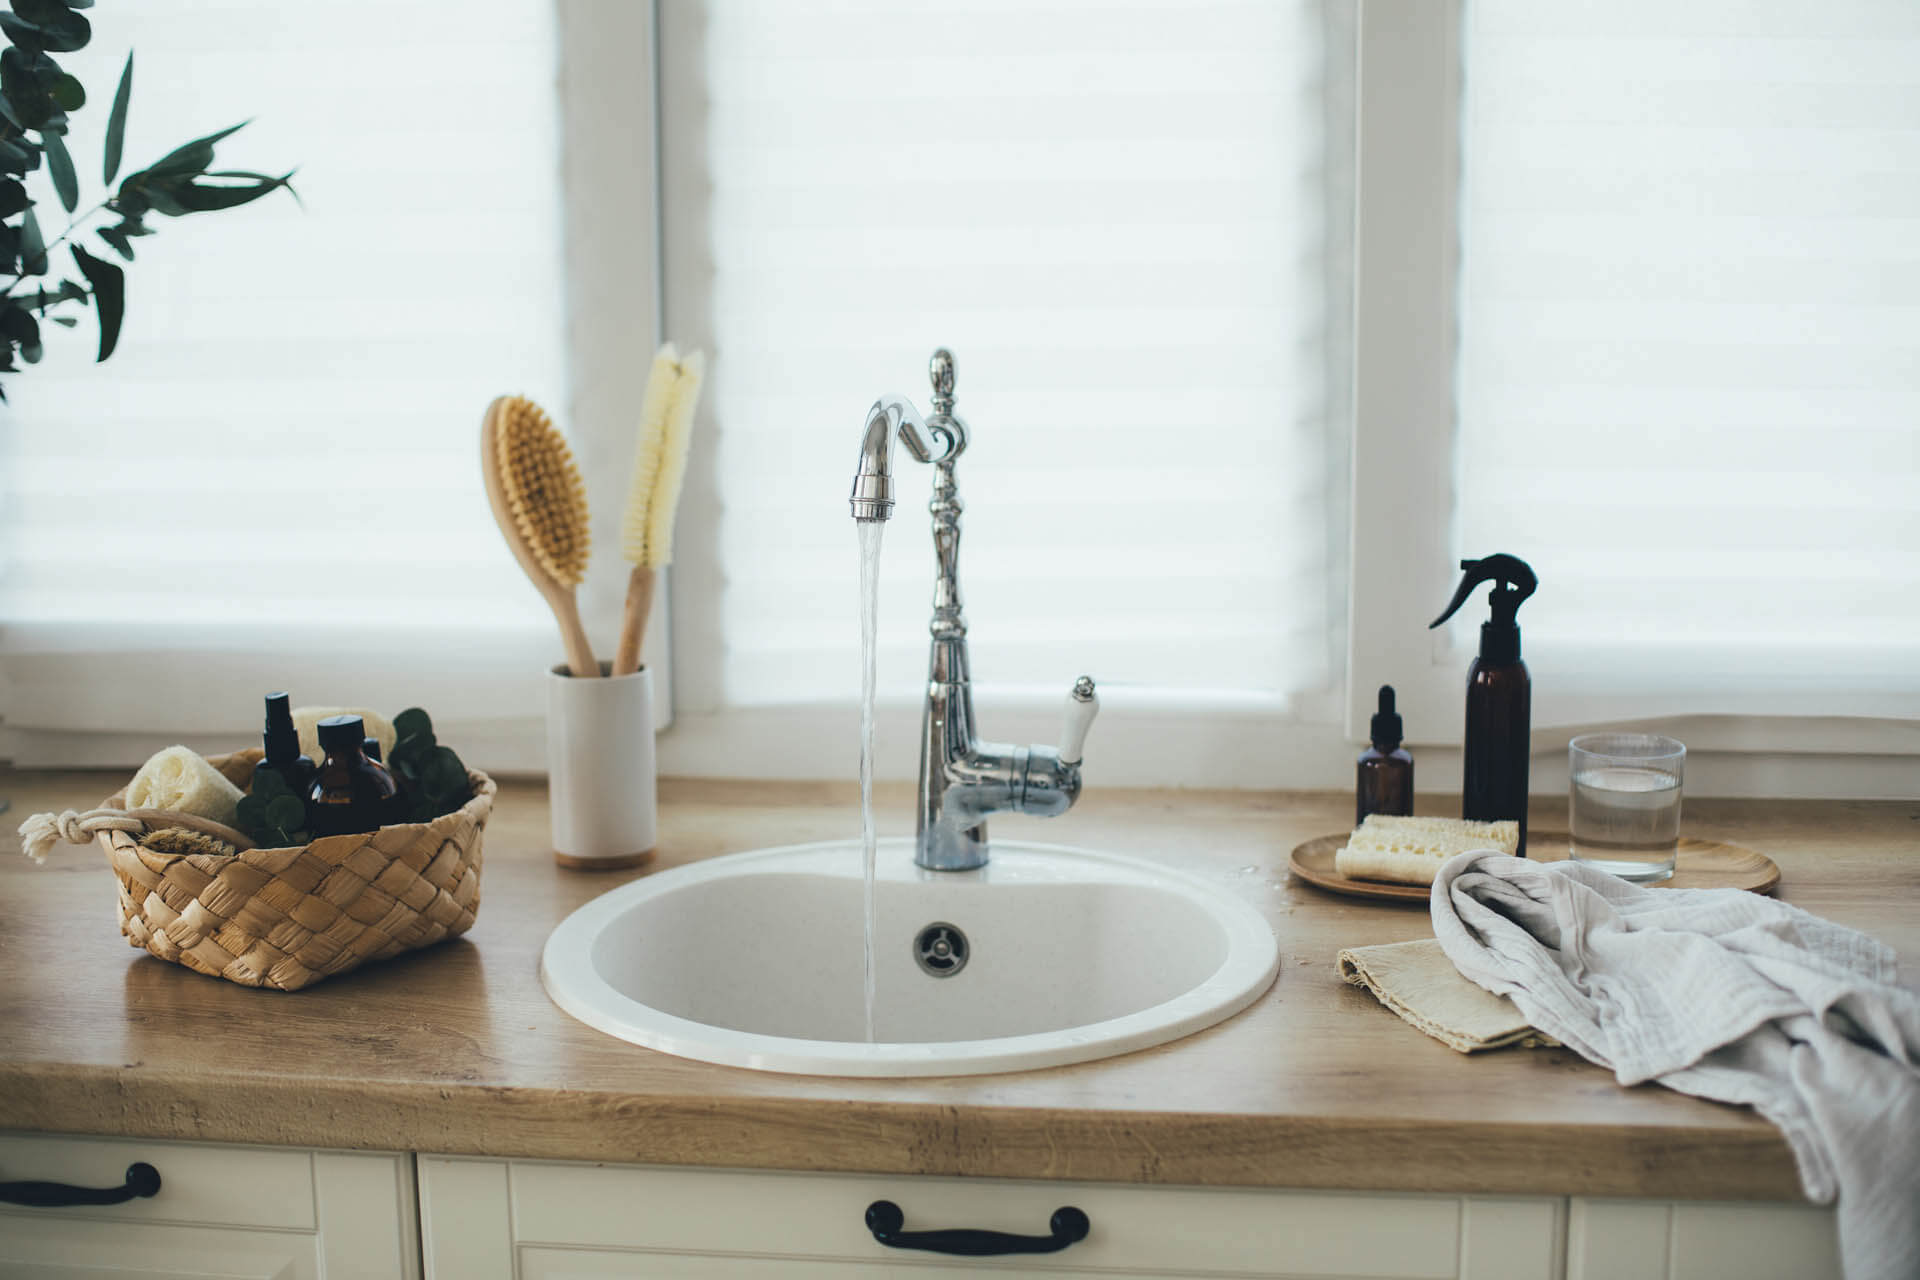 Kücheneinrichtung mit natürlichen, umweltfreundlichen, plastikfreien Reinigungsmitteln gegen Kalk und einem weißen Waschbecken